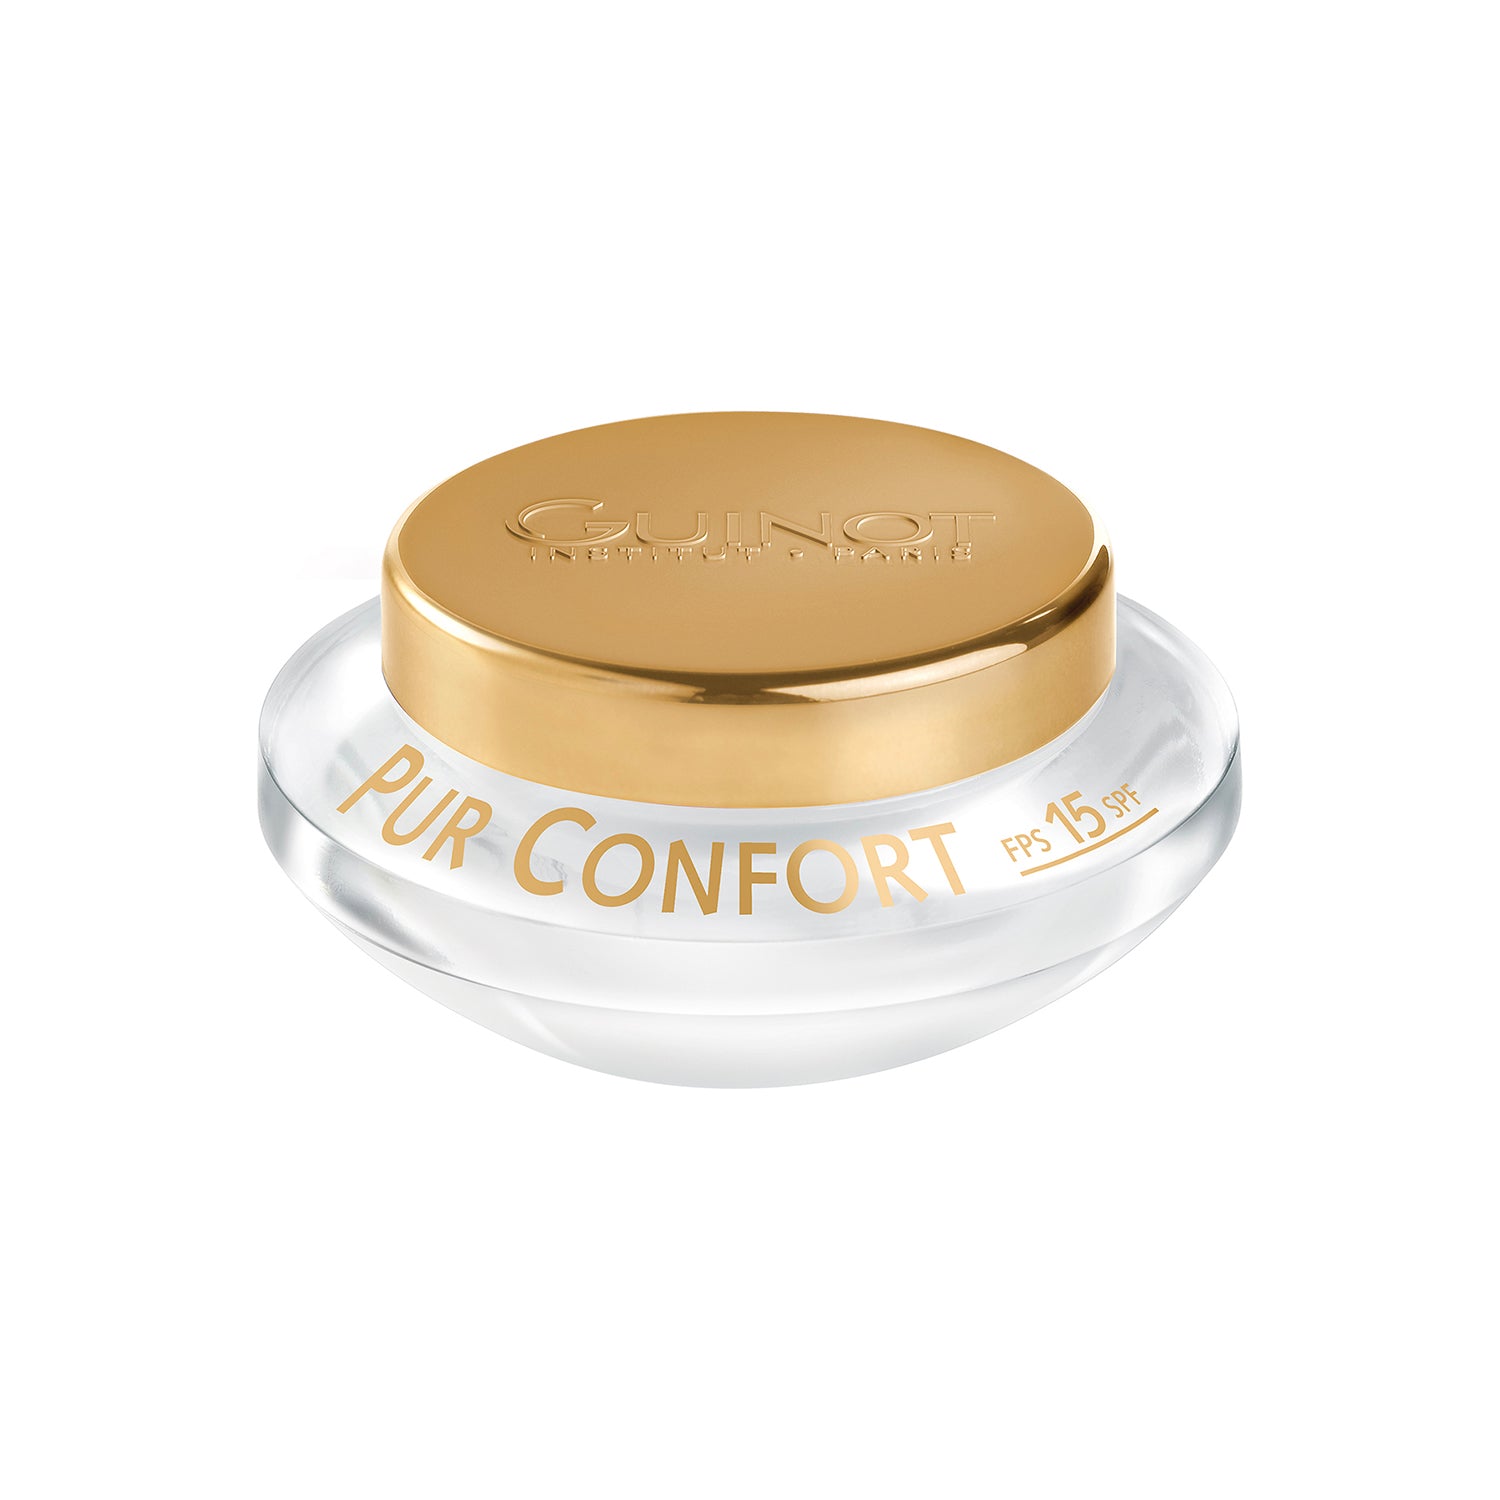 Pur Confort Cream 50ml